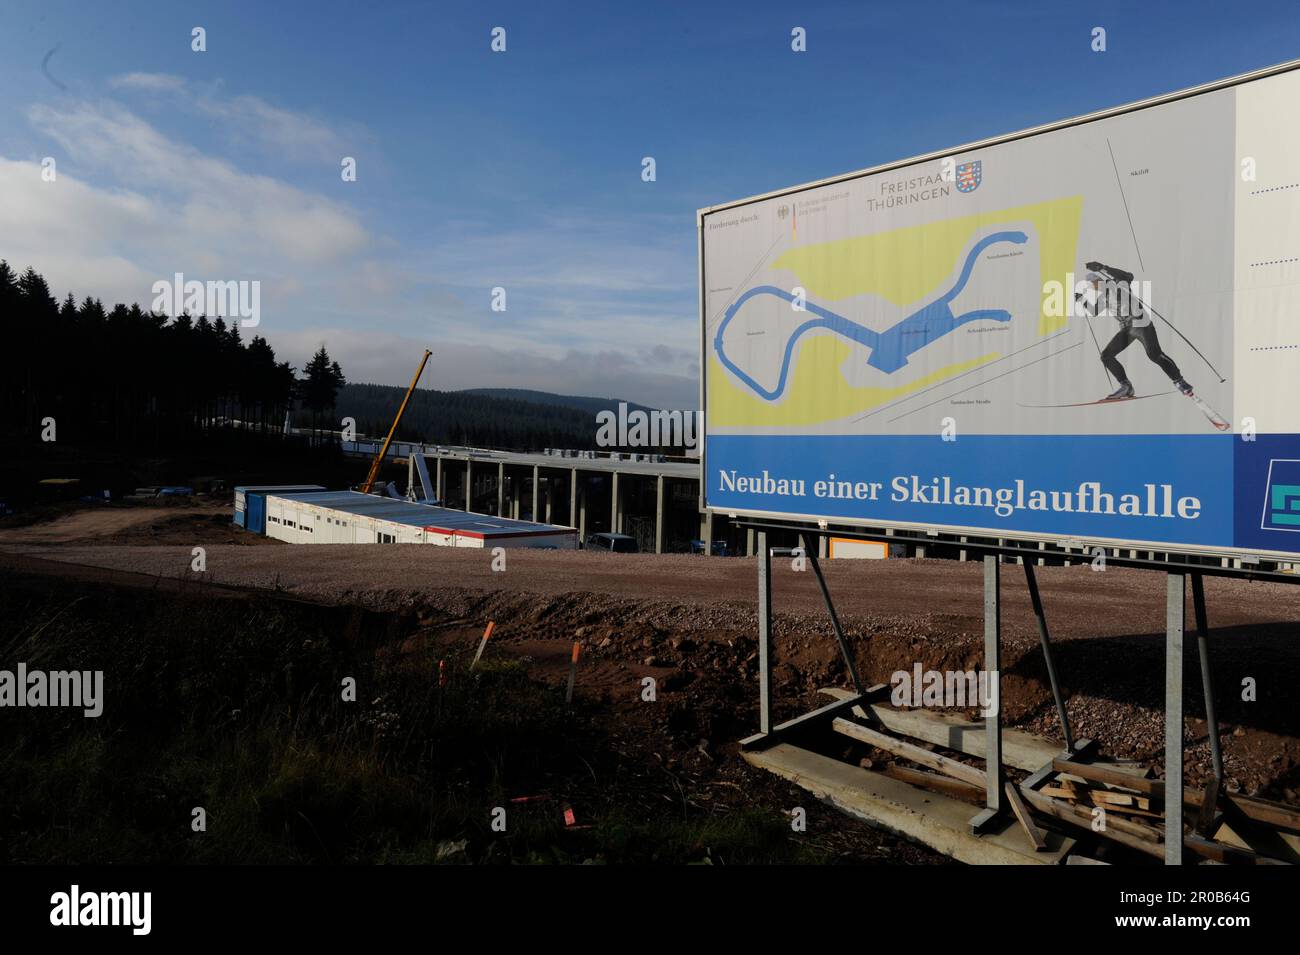 Das Land Thüringen, der Landkreis Schmalkalden und die Stadt Oberhof bauen in Oberhof eine Skihalle mit einer Gesamtstreckenlänge von über 2 Kilometern damit ein Ganzjahres Skilauf auf Schnee möglich ist. Stock Photo